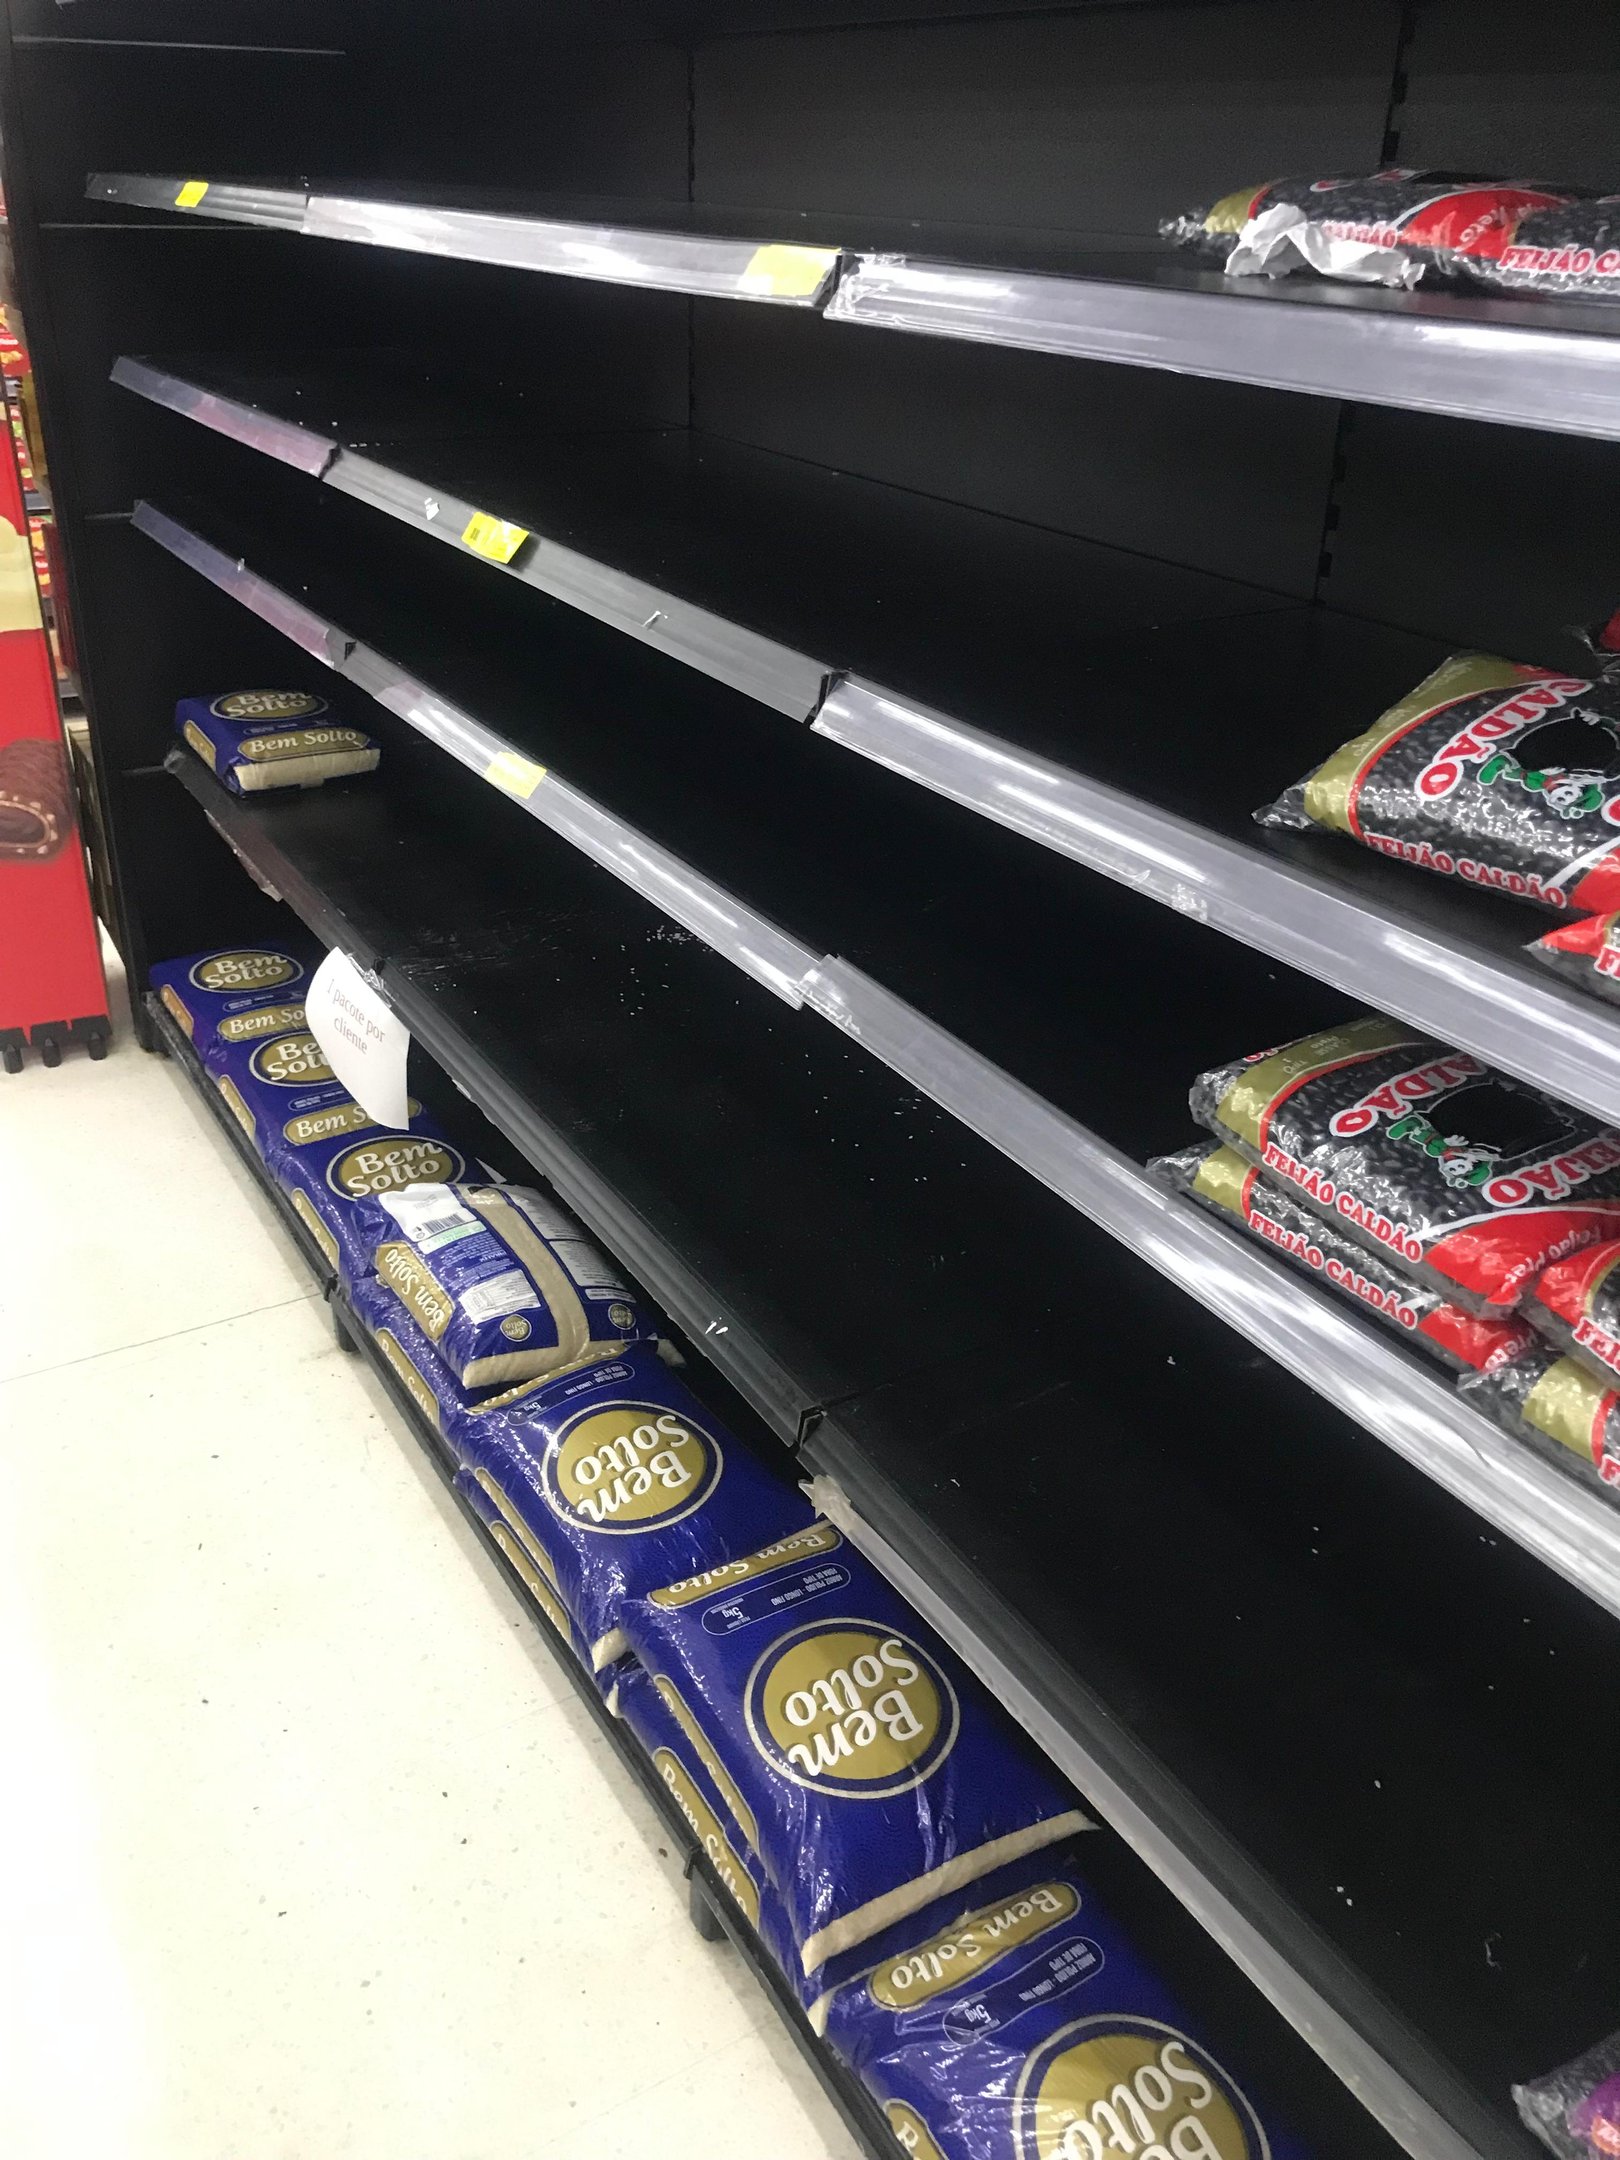 CATÁSTROFE NO RS: Supermercados leopoldenses com espaços vazios em gôndolas